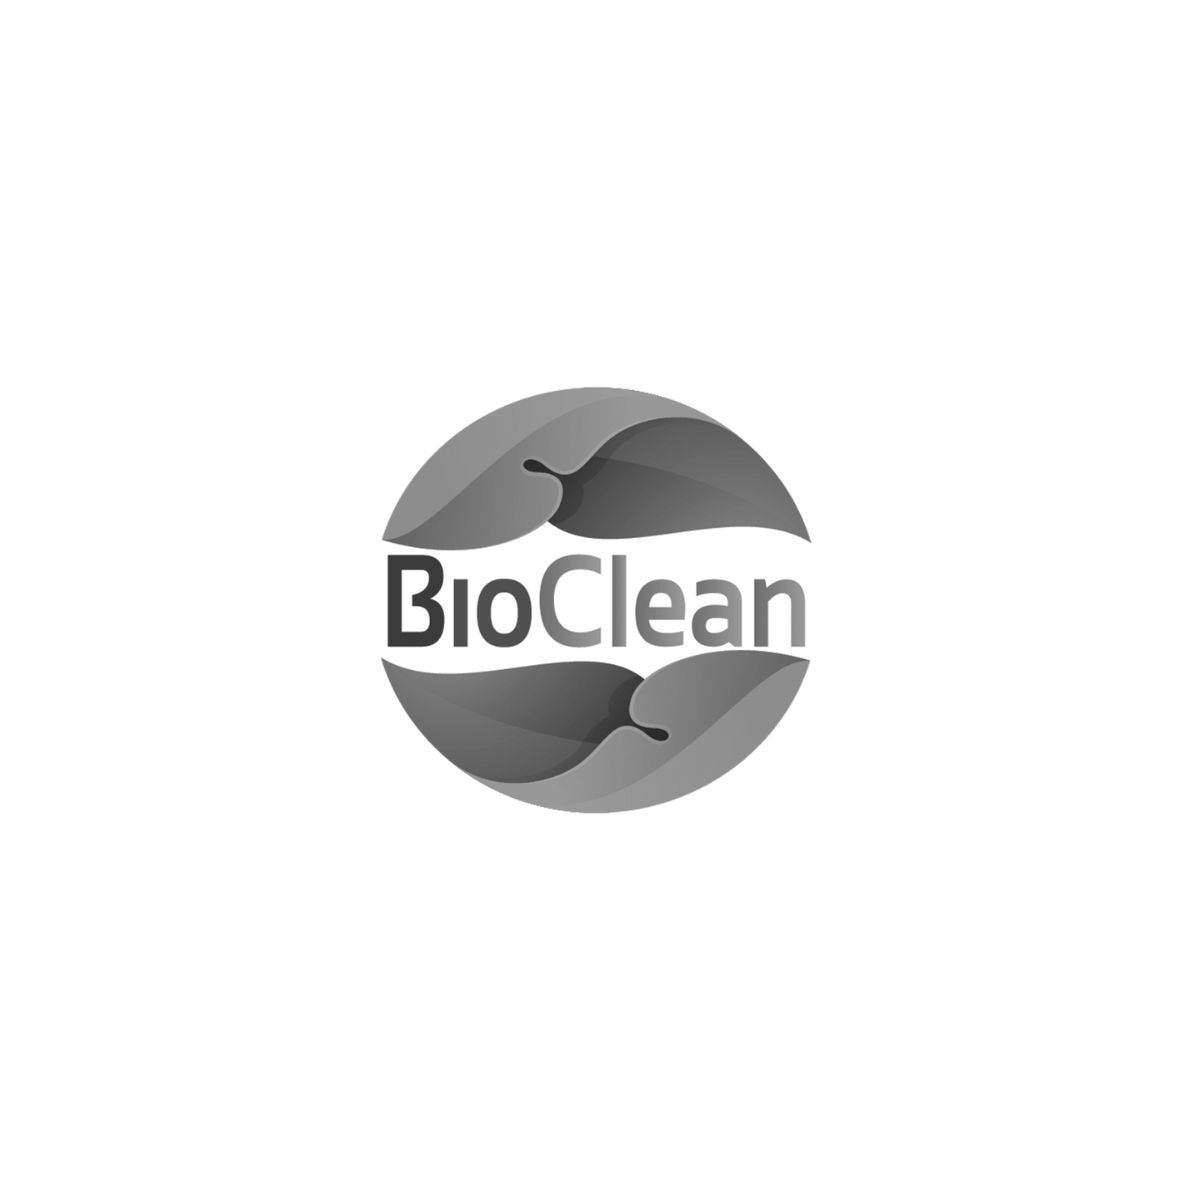 BioClean CT logo 